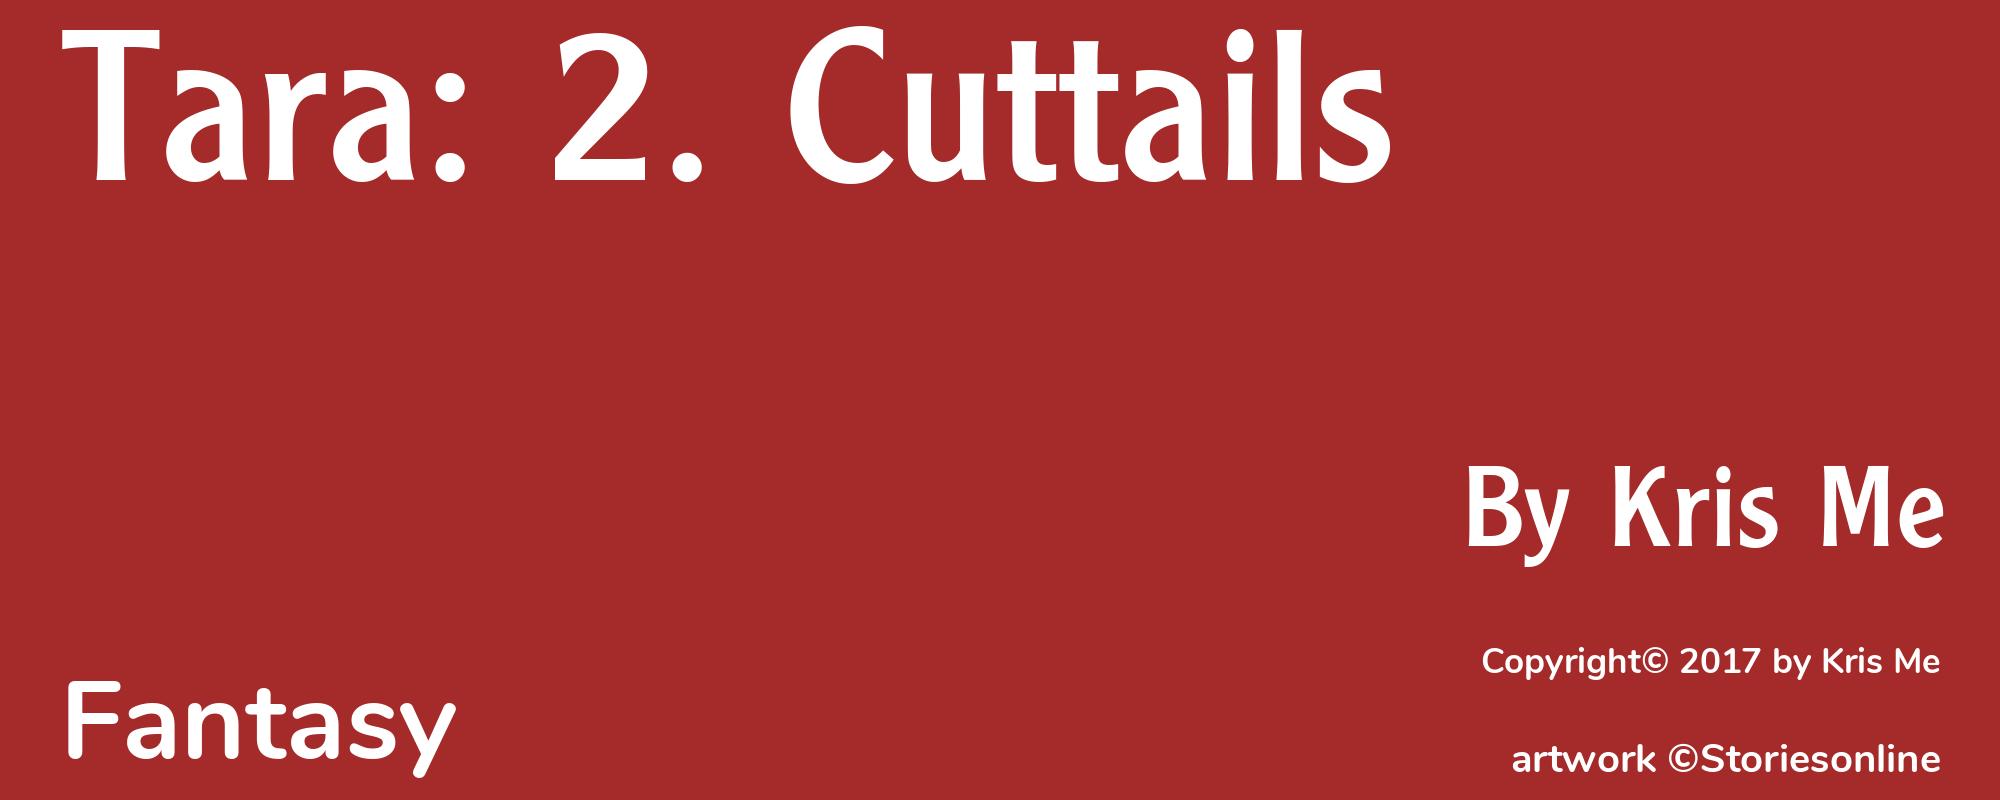 Tara: 2. Cuttails - Cover